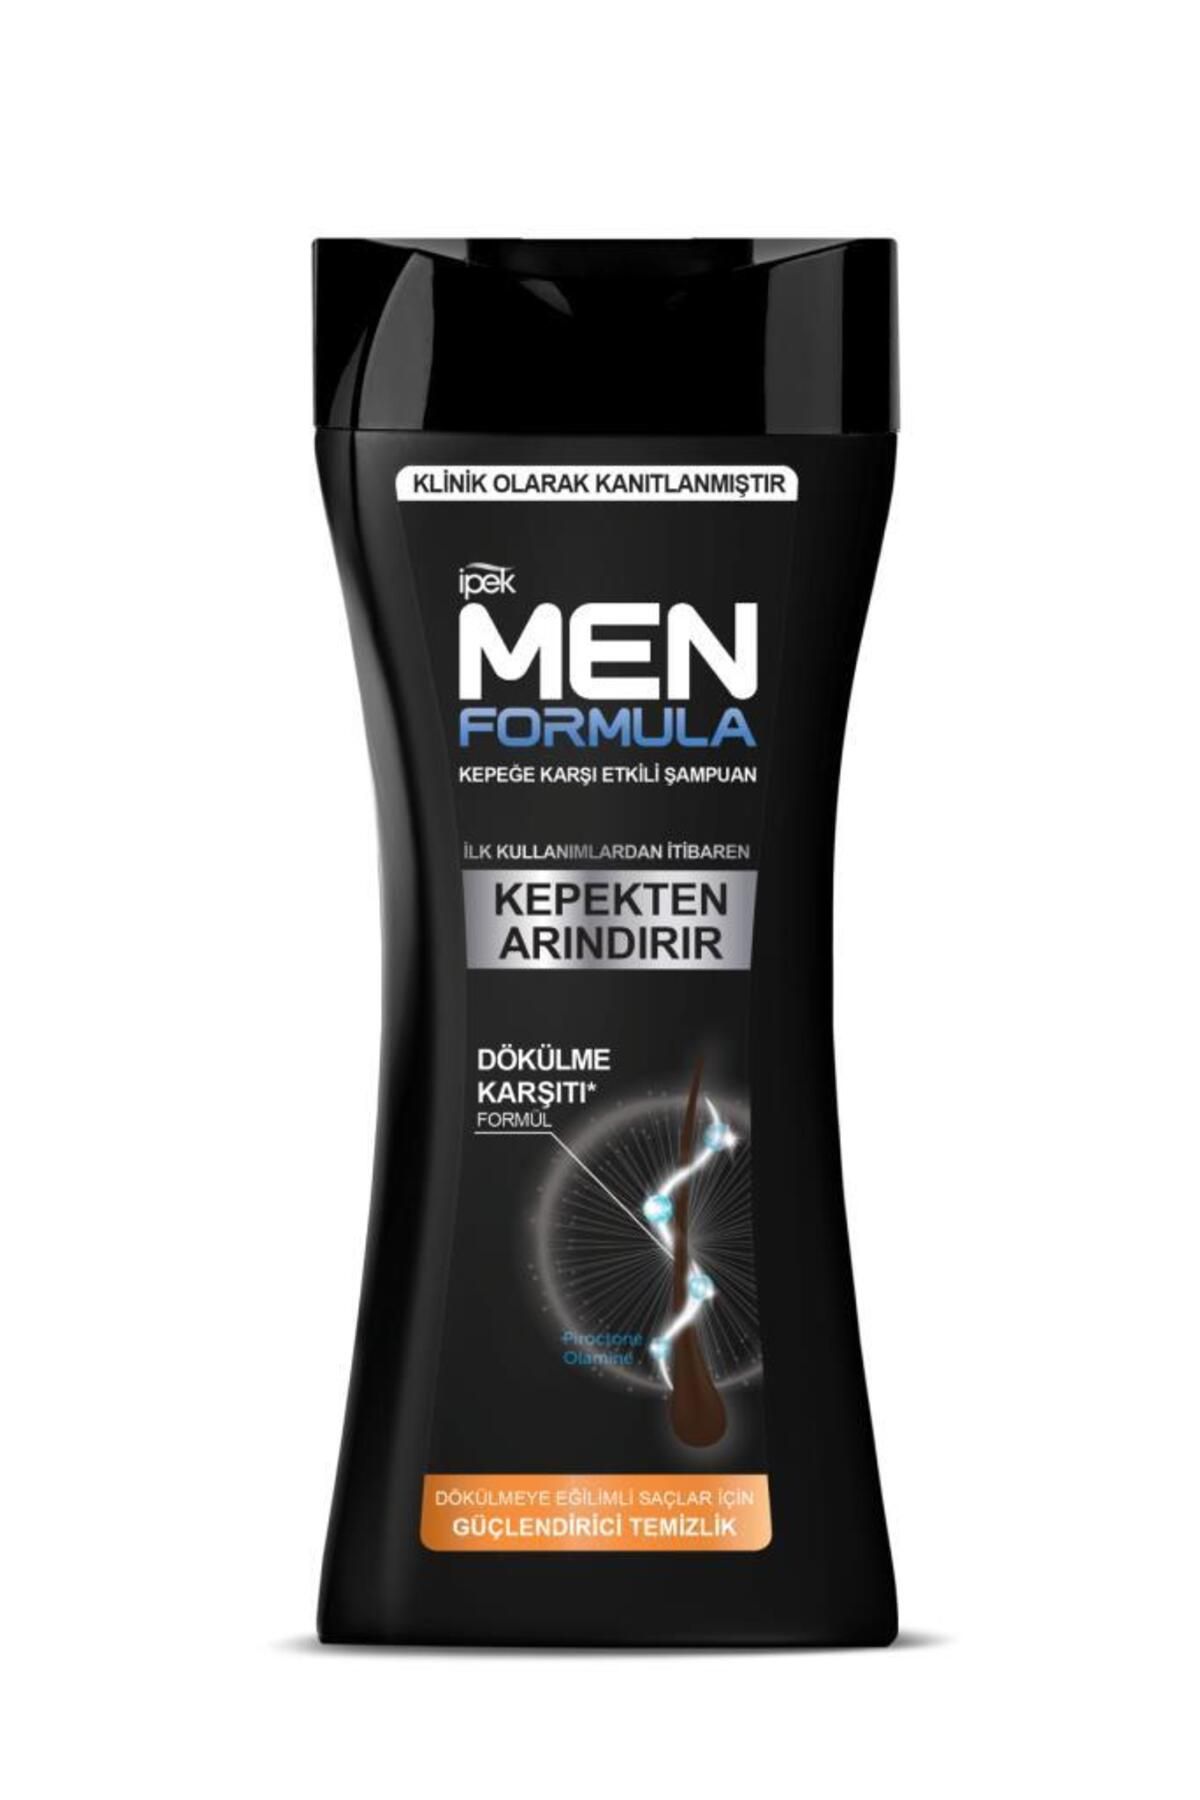 İpek Men Formula Kepeğe Karşı Etkili Şampuan - Dökülmeye Eğilimli Saçlar